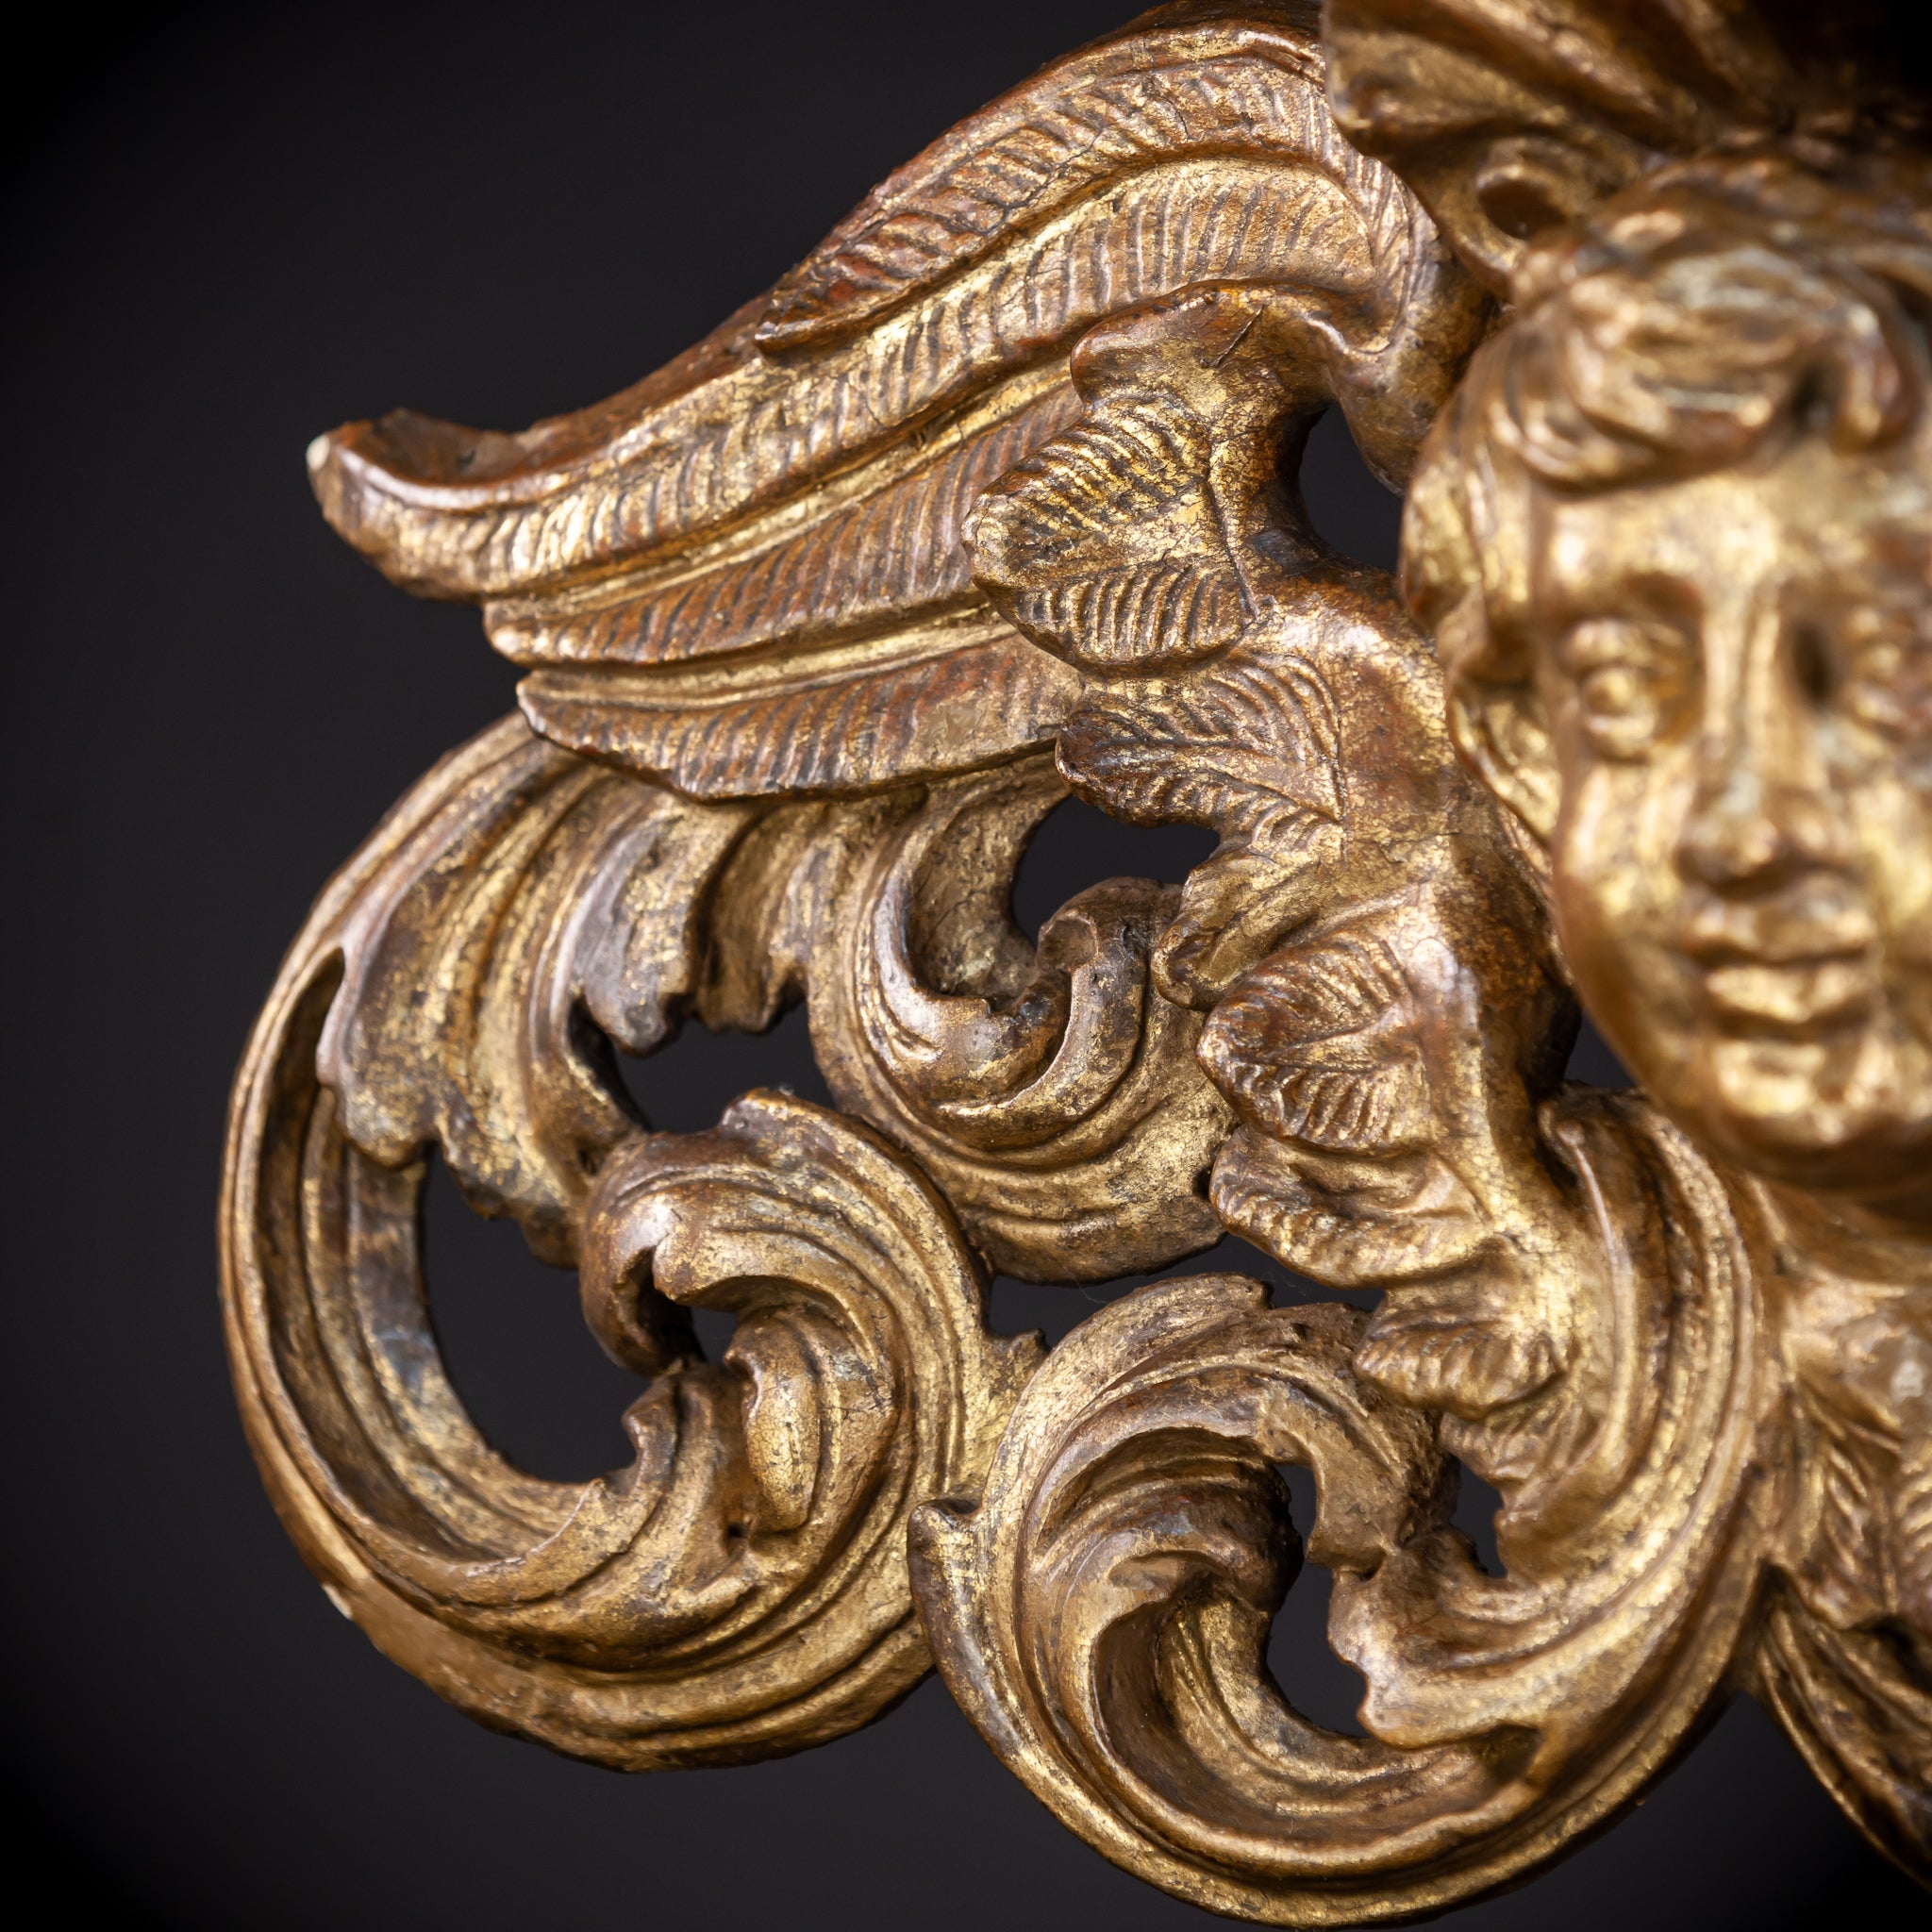 Angel Wood Carving Sculpture | 1800s Antique | 24.8" / 63 cm